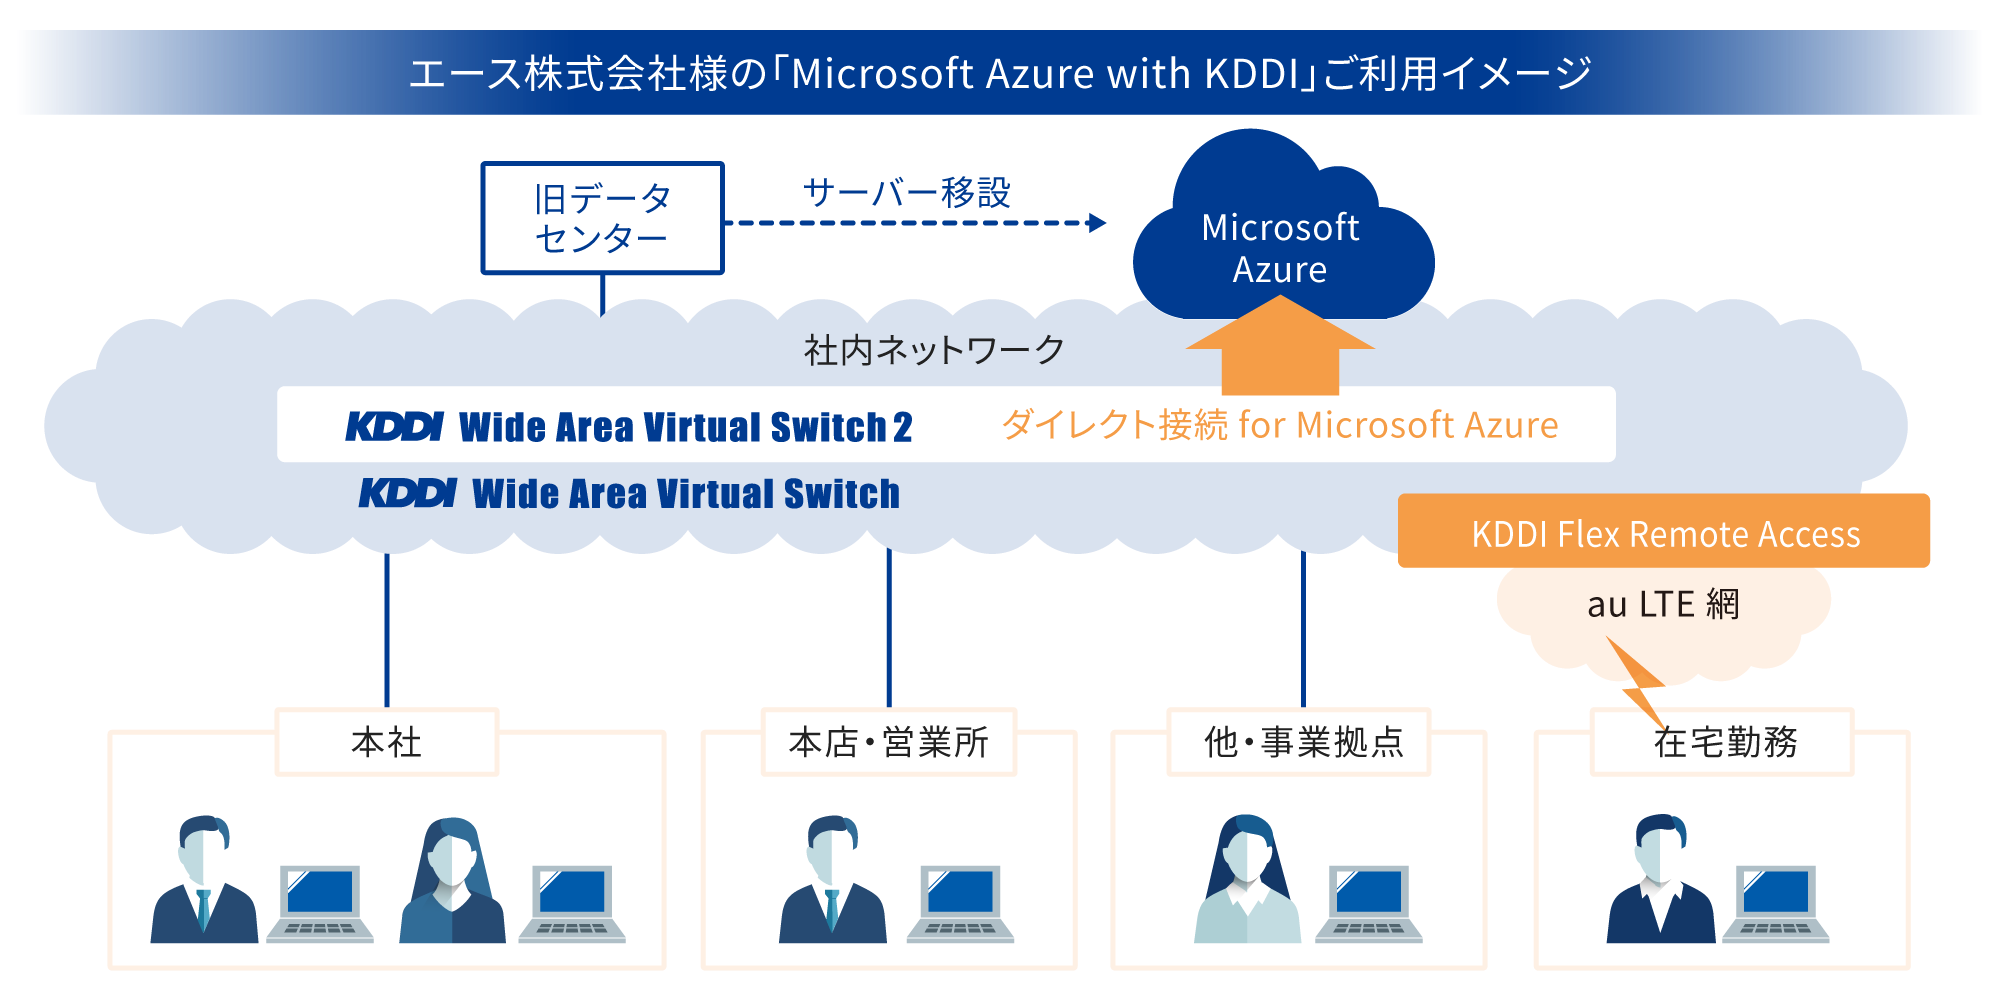 エース株式会社様の「Microsoft Azure with KDDI」ご利用イメージ図 セキュリティレベルを向上し、よりセキュアな環境で在宅勤務が可能に。